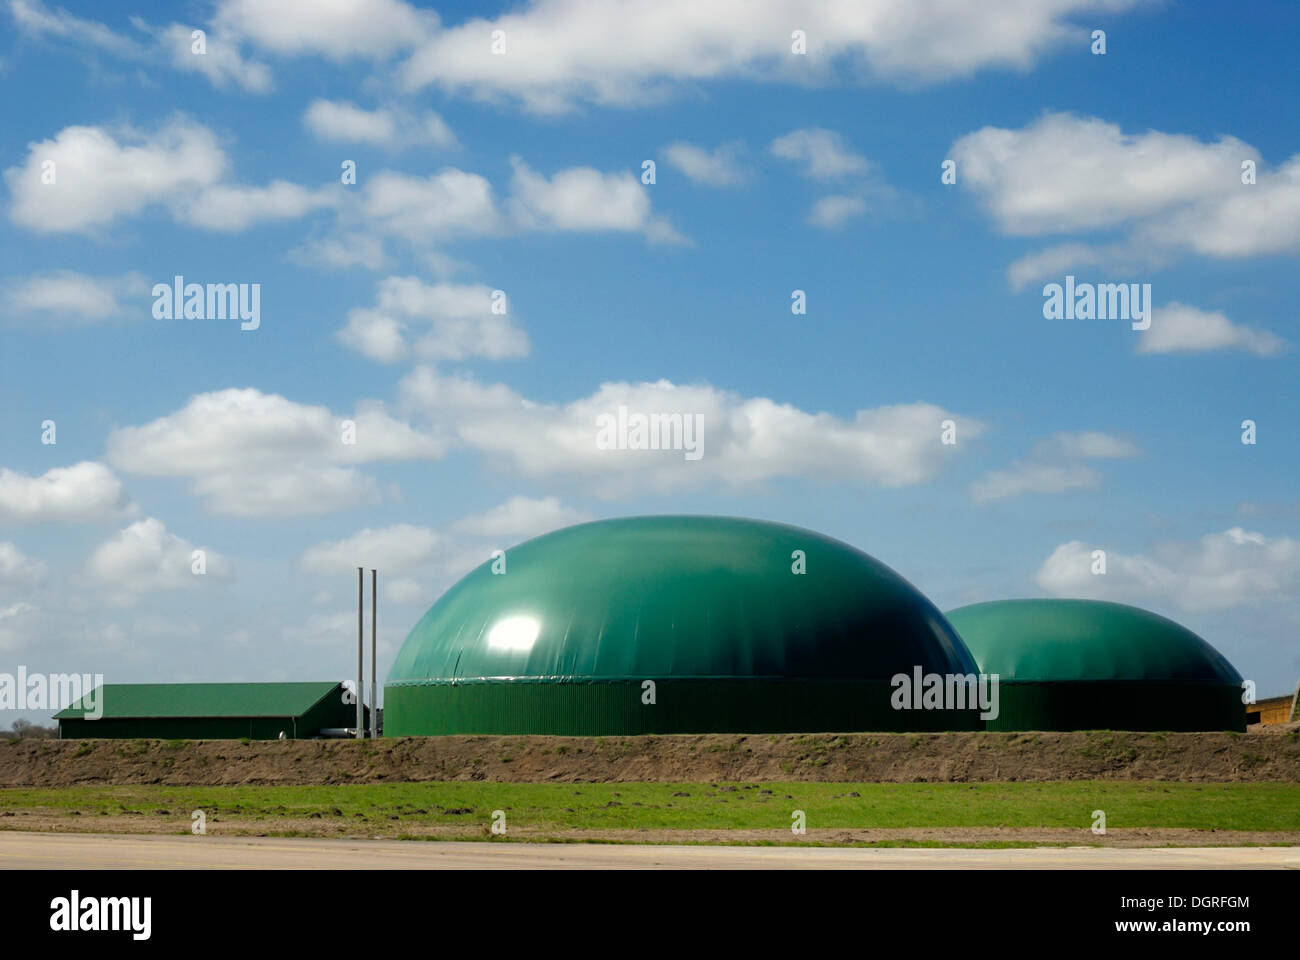 La planta de biogás agrícola, planta de energía de biomasa con unidad de cogeneración CHP, para la producción de electricidad y calor Foto de stock